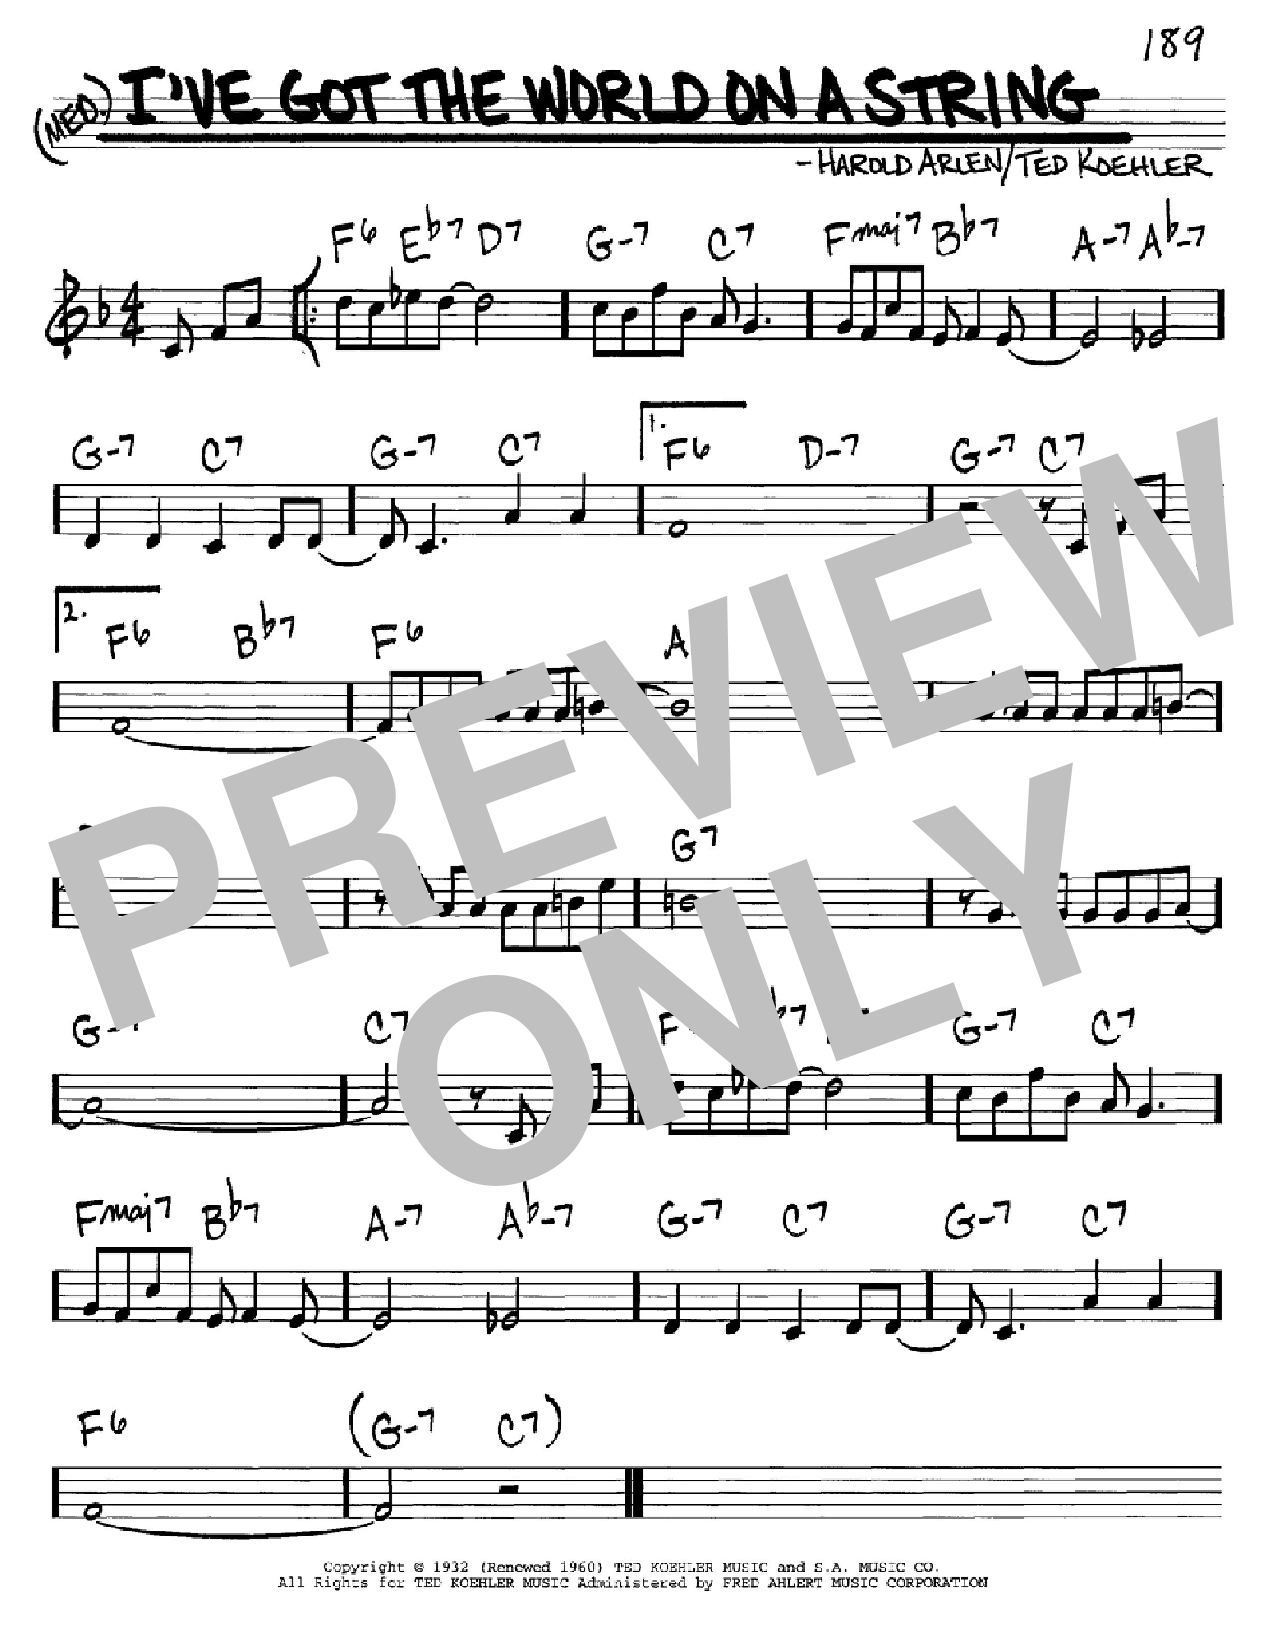 Download Harold Arlen I've Got The World On A String Sheet Music